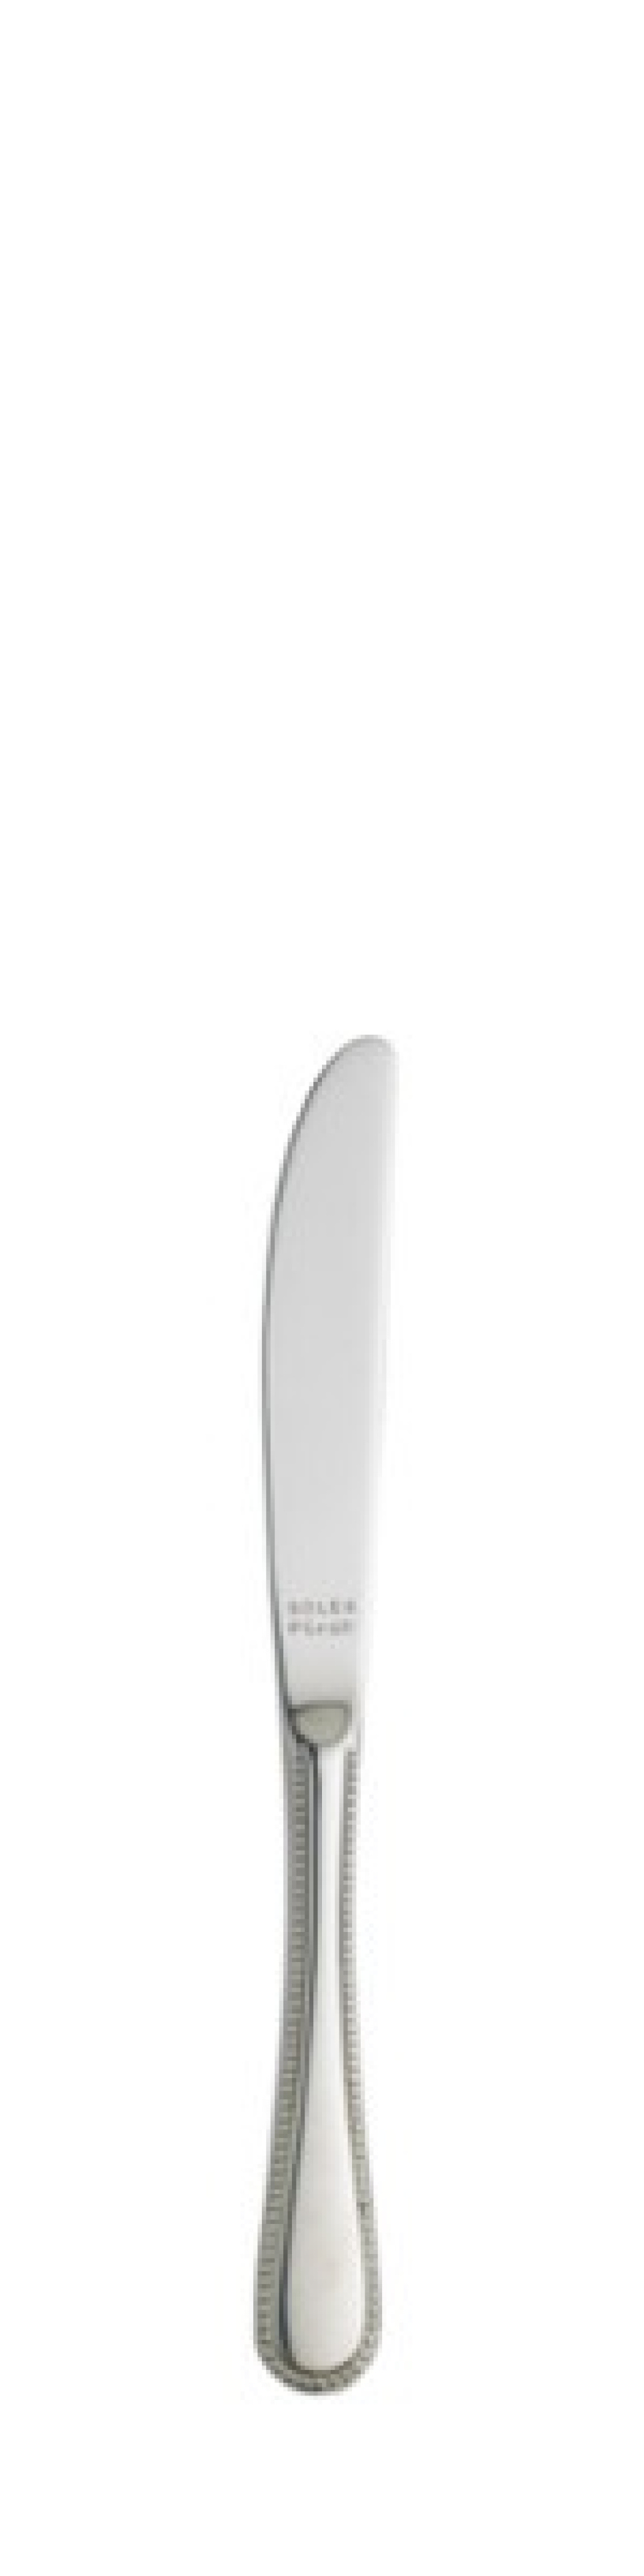 Perle Smörkniv 174 mm - Solex i gruppen Dukning / Bestick / Smörknivar hos KitchenLab (1284-21424)